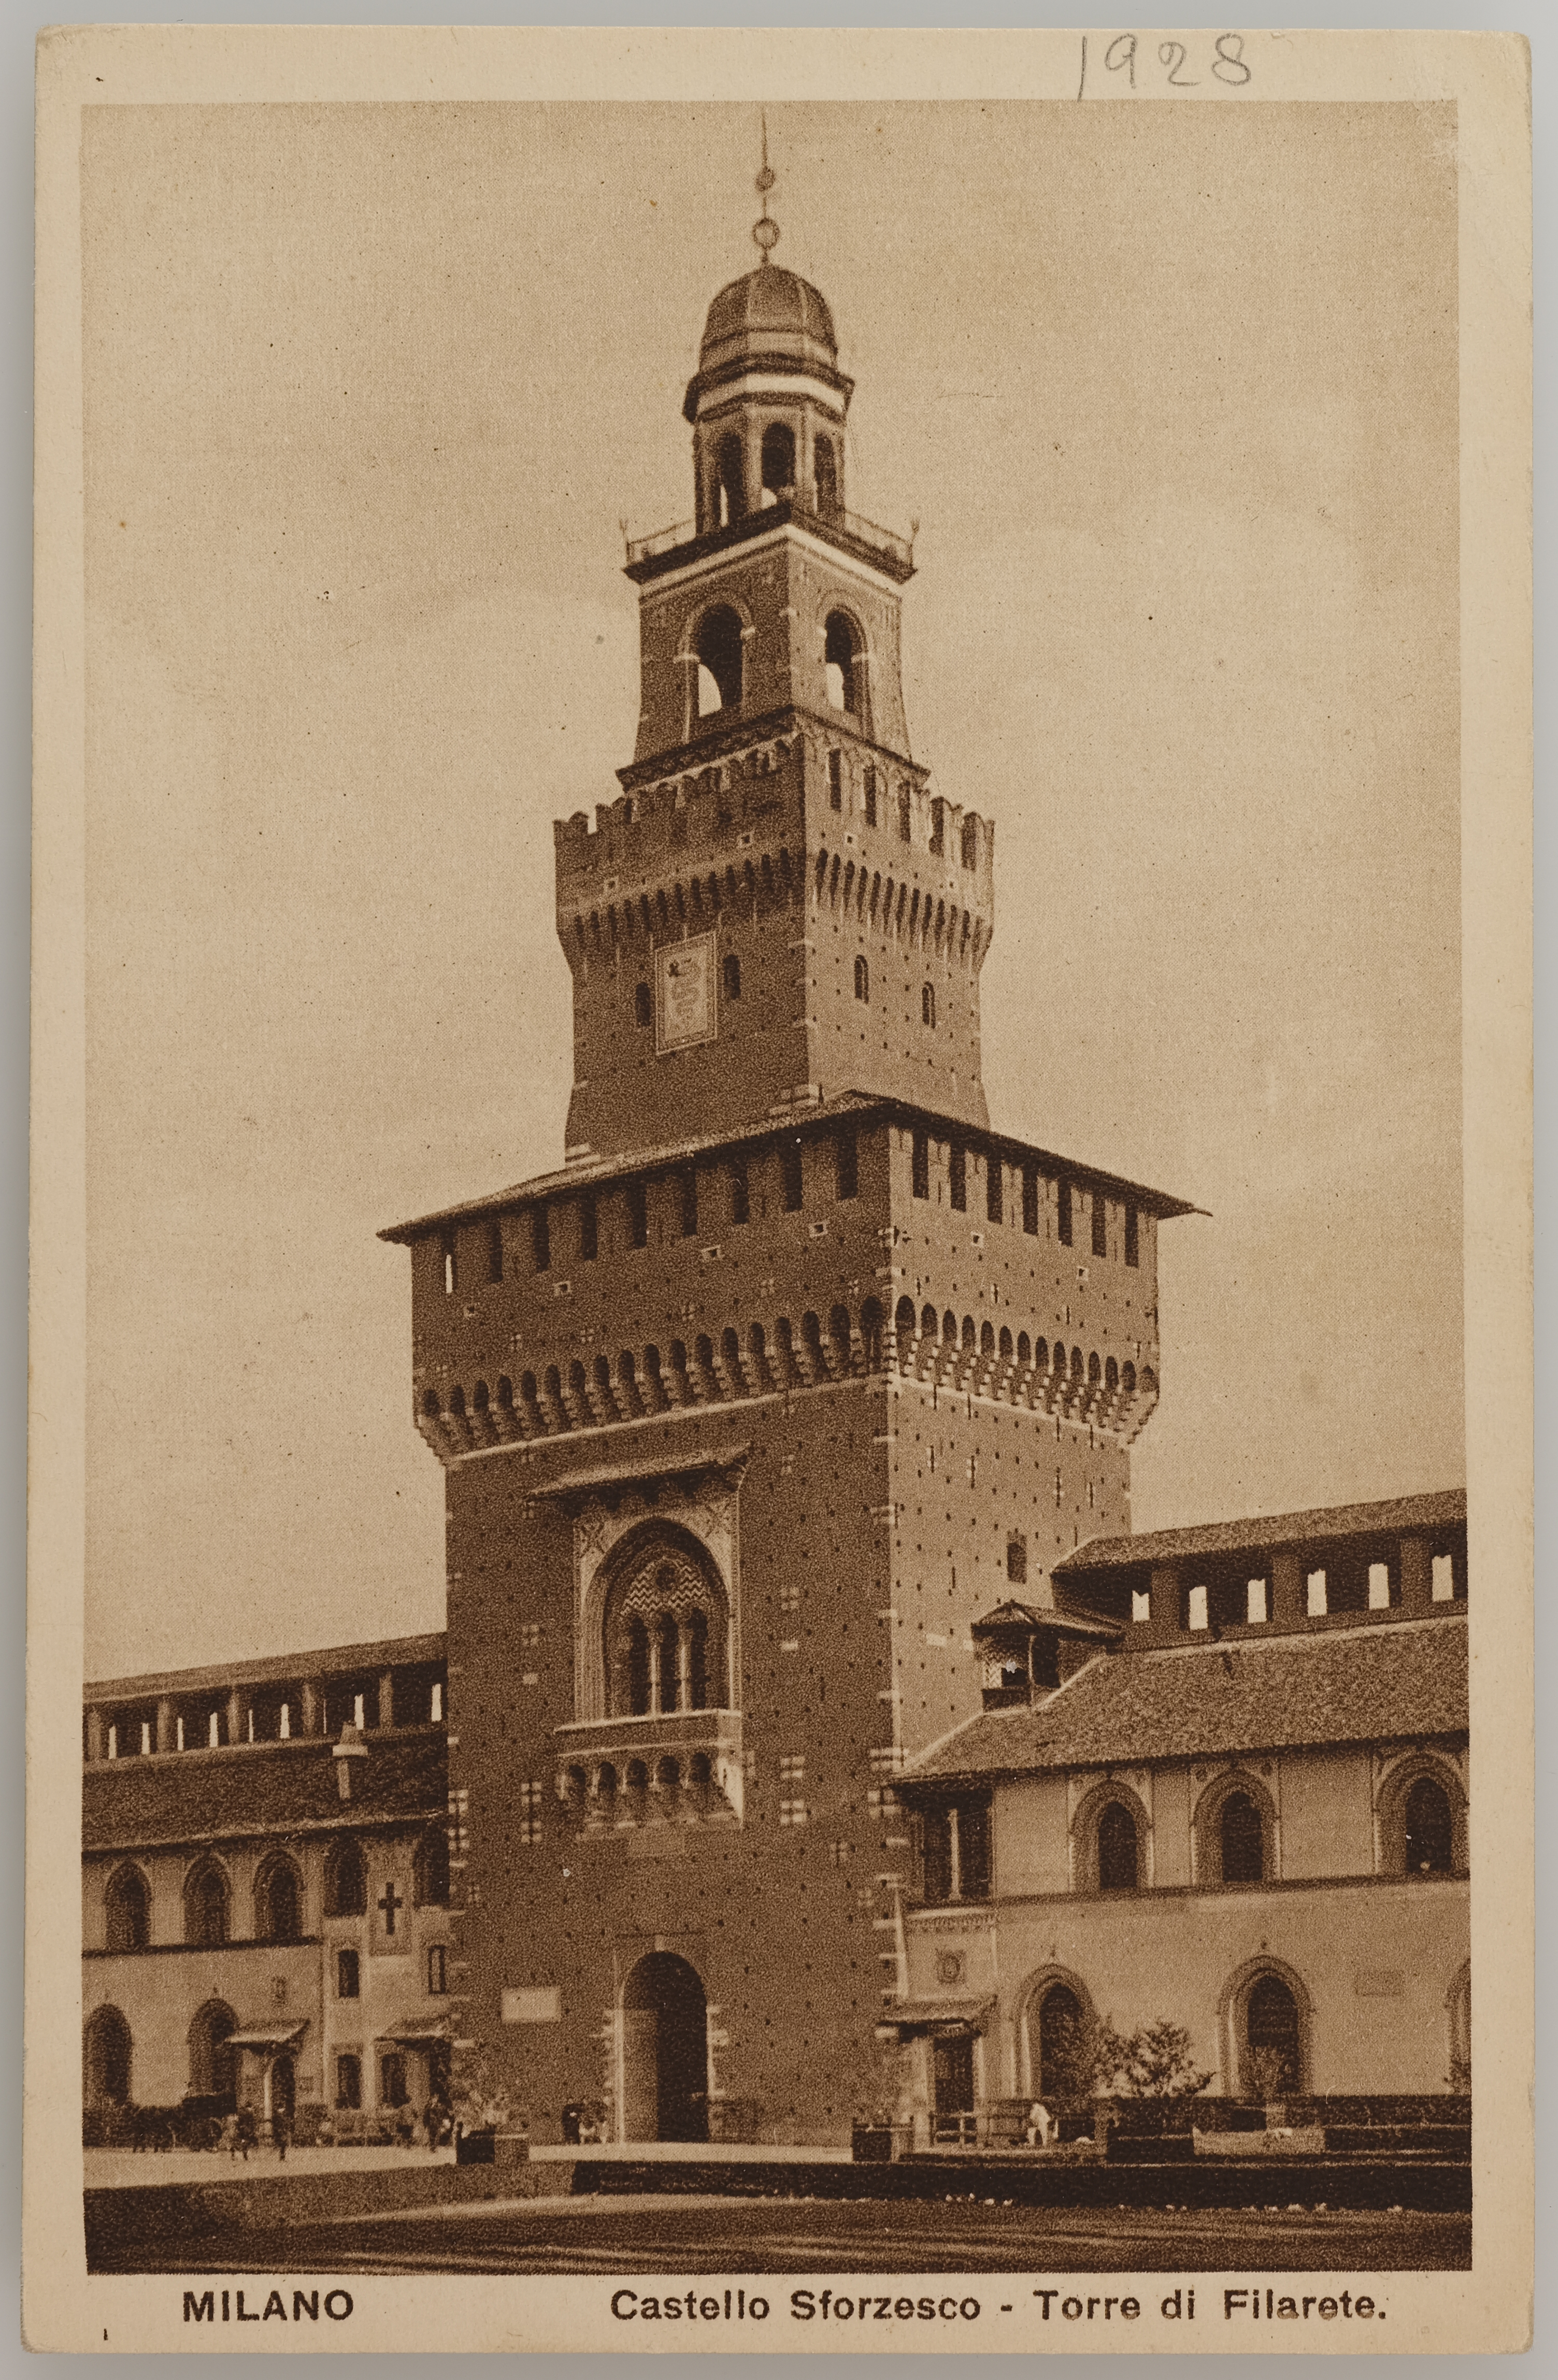 Fotografo non identificato, Milano - Castello Sforzesco - Torre del Filarete, 1928, stampa fotomeccanica/ cartolina postale, DVC001518